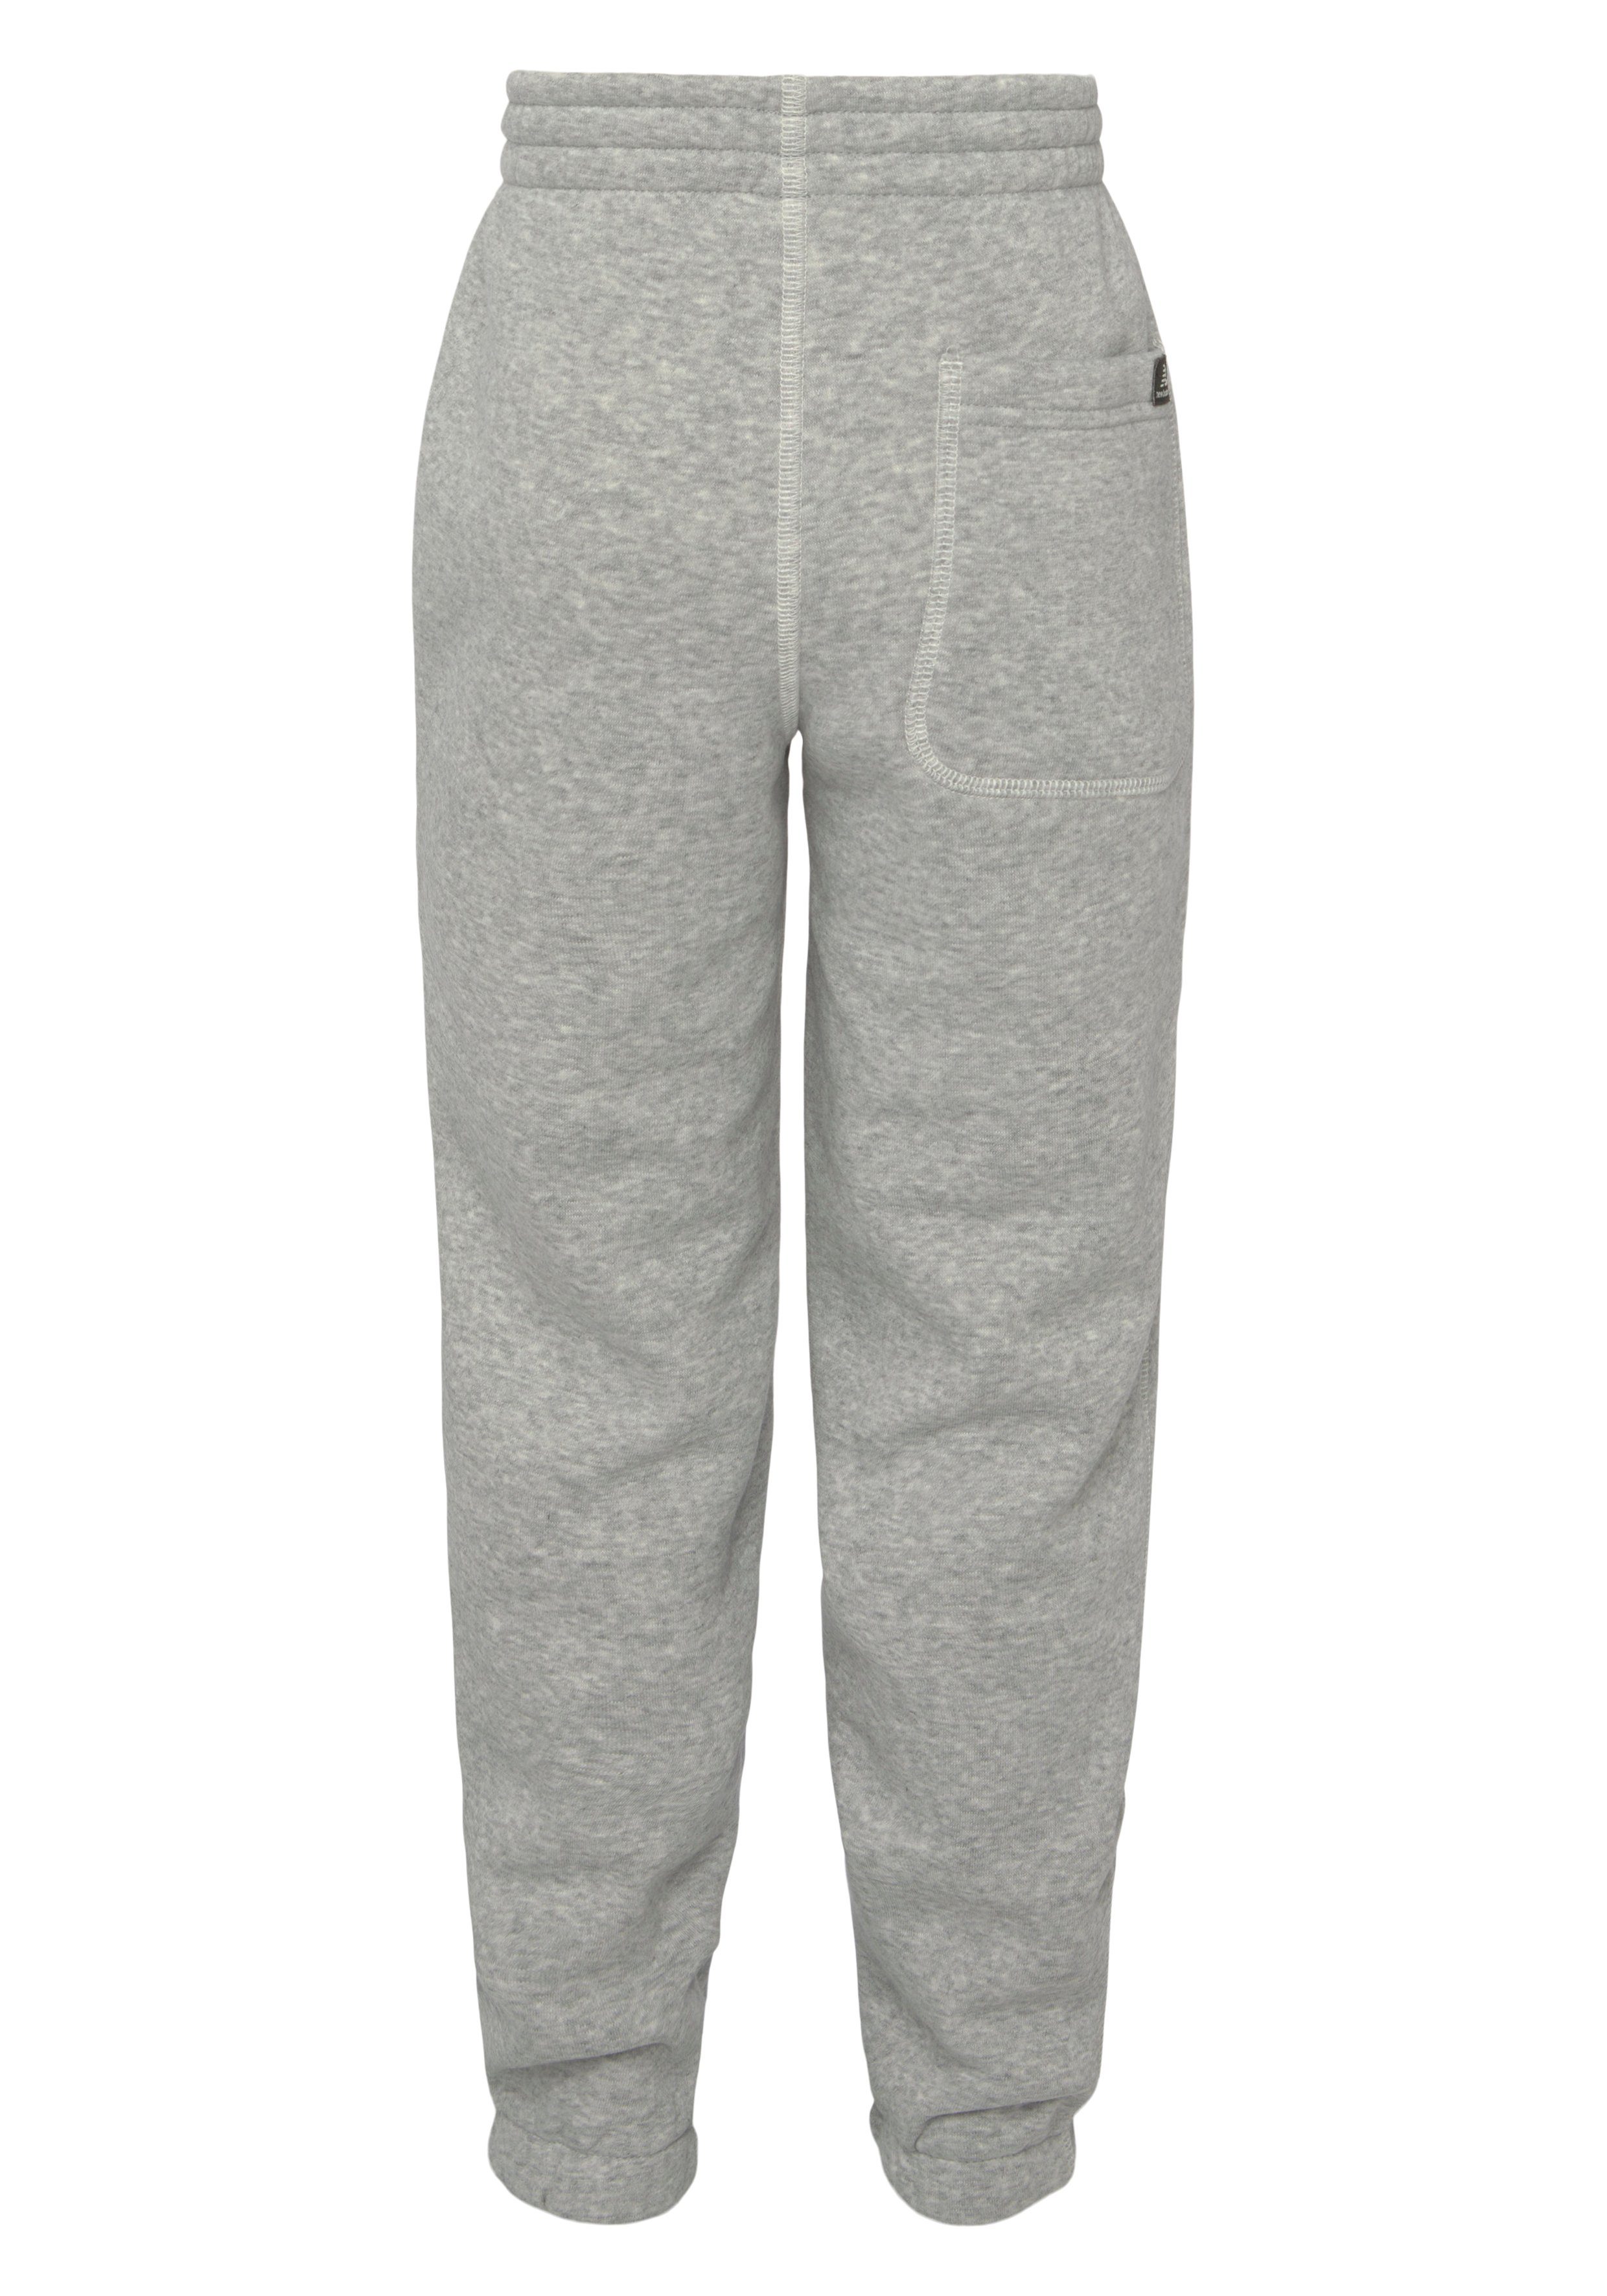 New Balance Sweathose Pant Essentials grey Brushed athletic Back